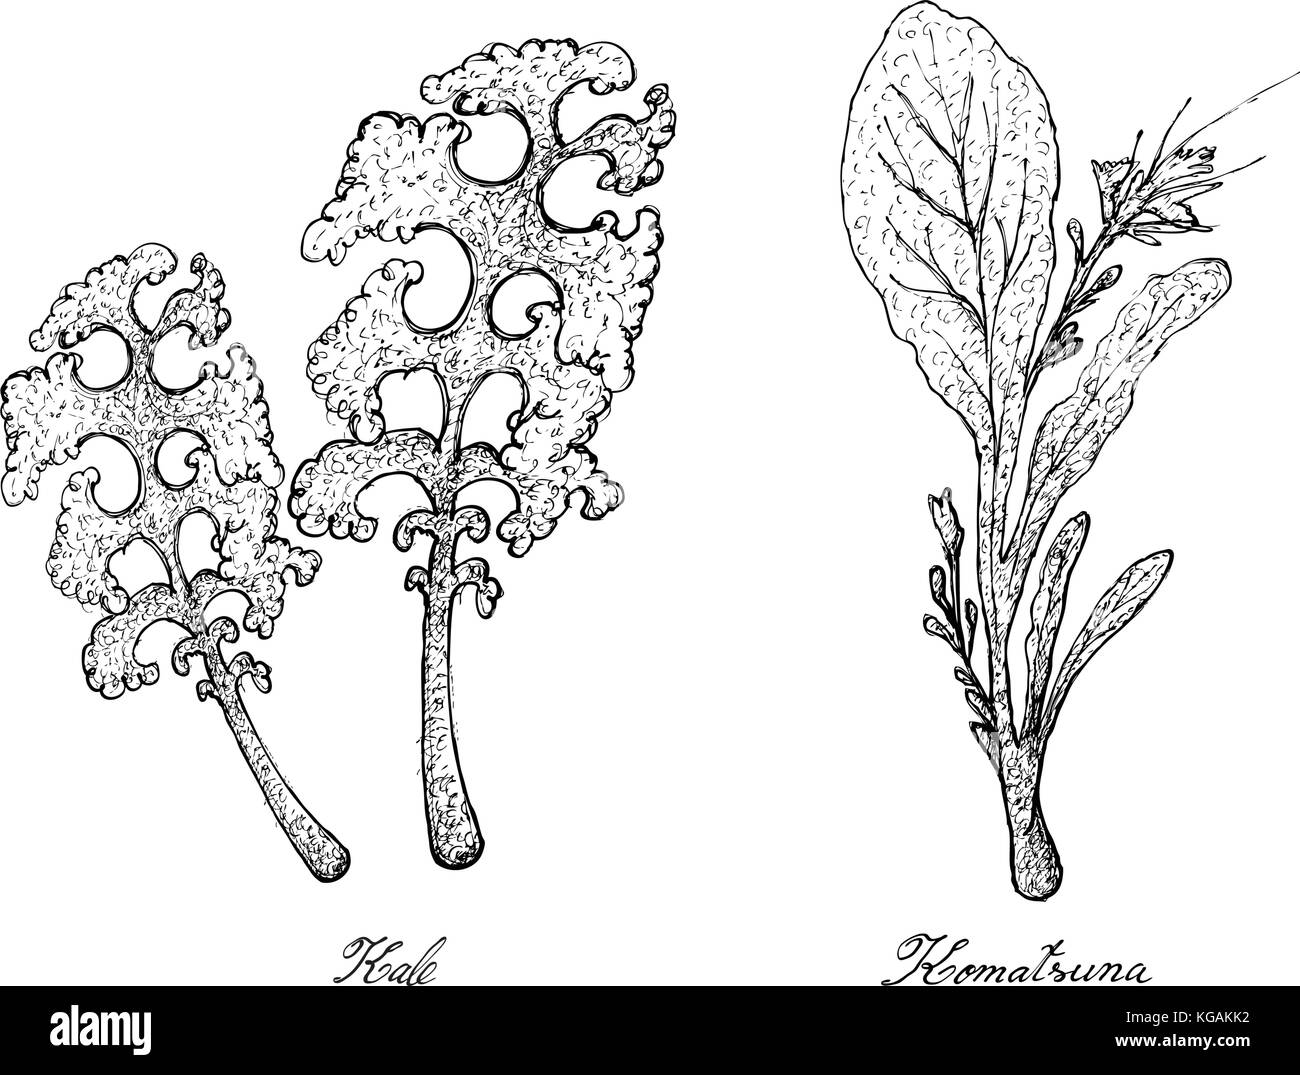 Salat, Illustration von Hand gezeichnete Skizze köstlichen frischen Grünkohl und komatsuna Pflanzen auf weißem Hintergrund. Stock Vektor